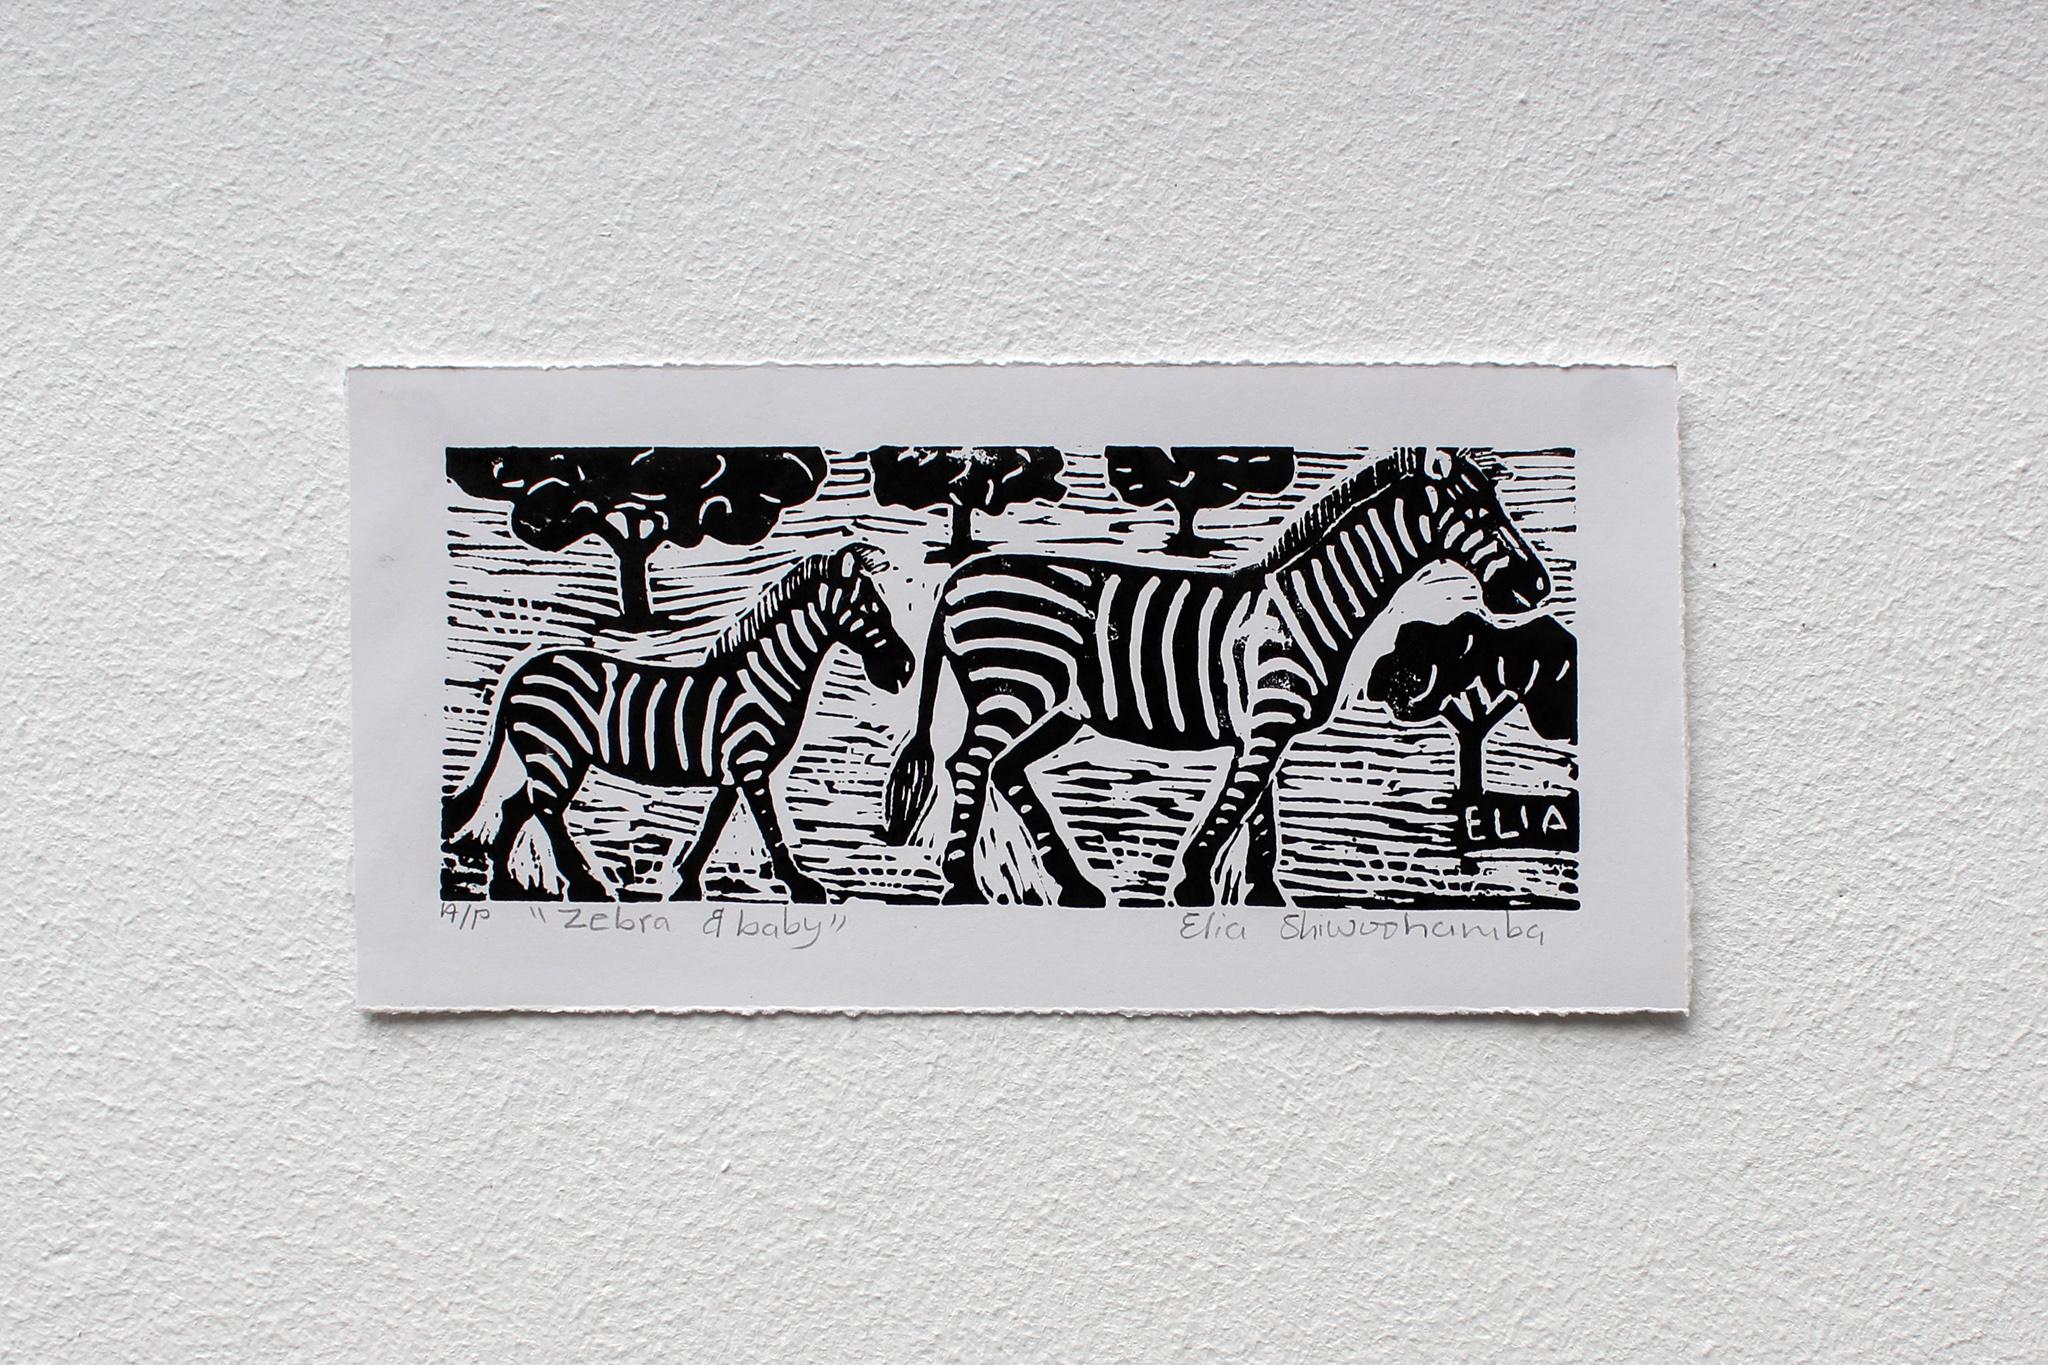 Zebra und Baby, Linolschnitt auf Papier.

Elia Shiwoohamba wurde 1981 in Windhoek, Namibia, geboren. Im Jahr 2006 machte er seinen Abschluss am John Muafangejo Art Centre in Windhoek. Shiwoohamba ist auf Druckgrafik und Bildhauerei spezialisiert und